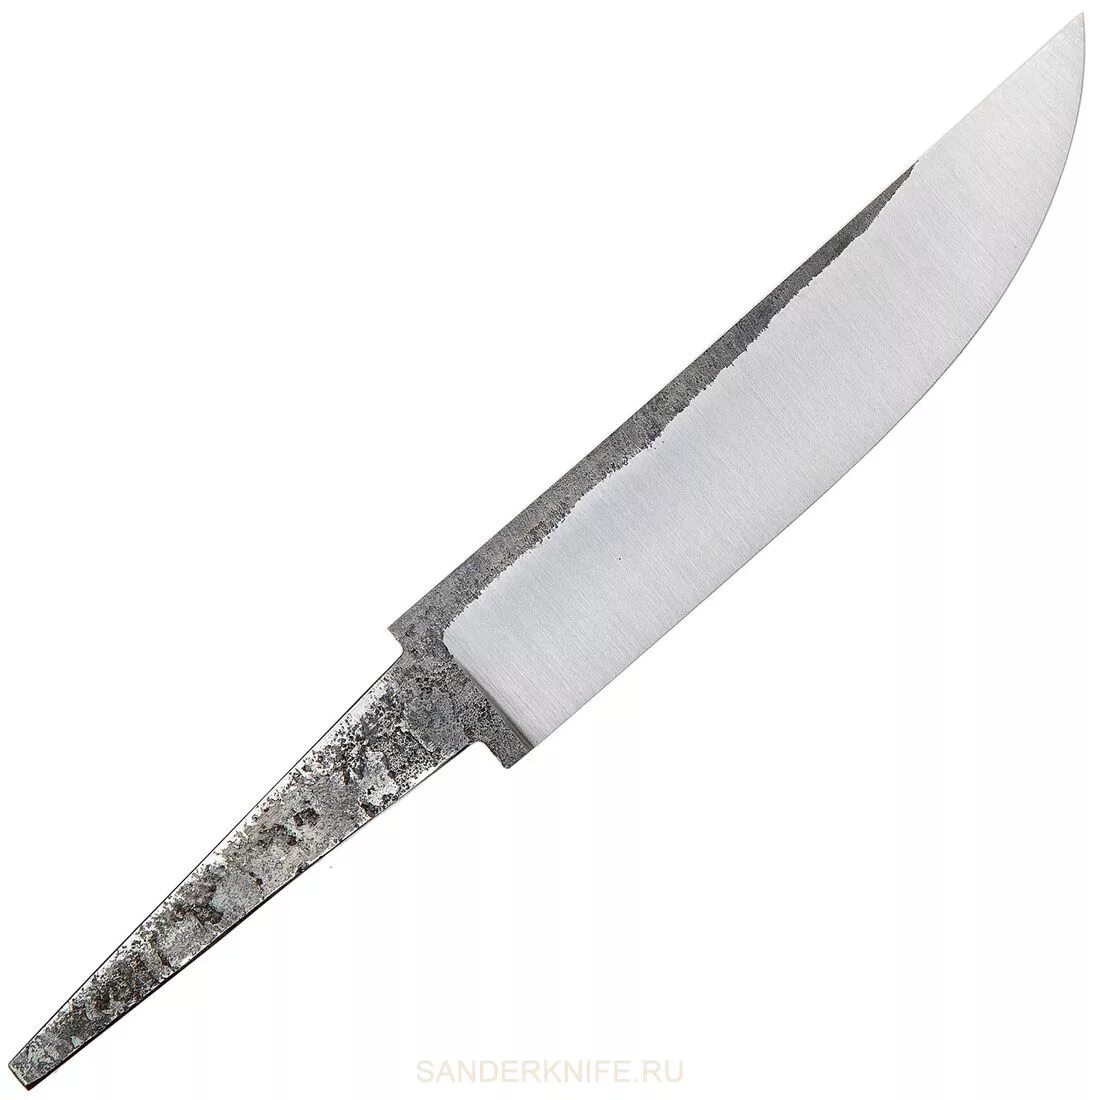 Купите клинок из стали. Сталь х12мф для ножей. Клинки для ножа х12мф. Клинки для ножей х12мф МТ. Клинок из стали 12х2н4а.